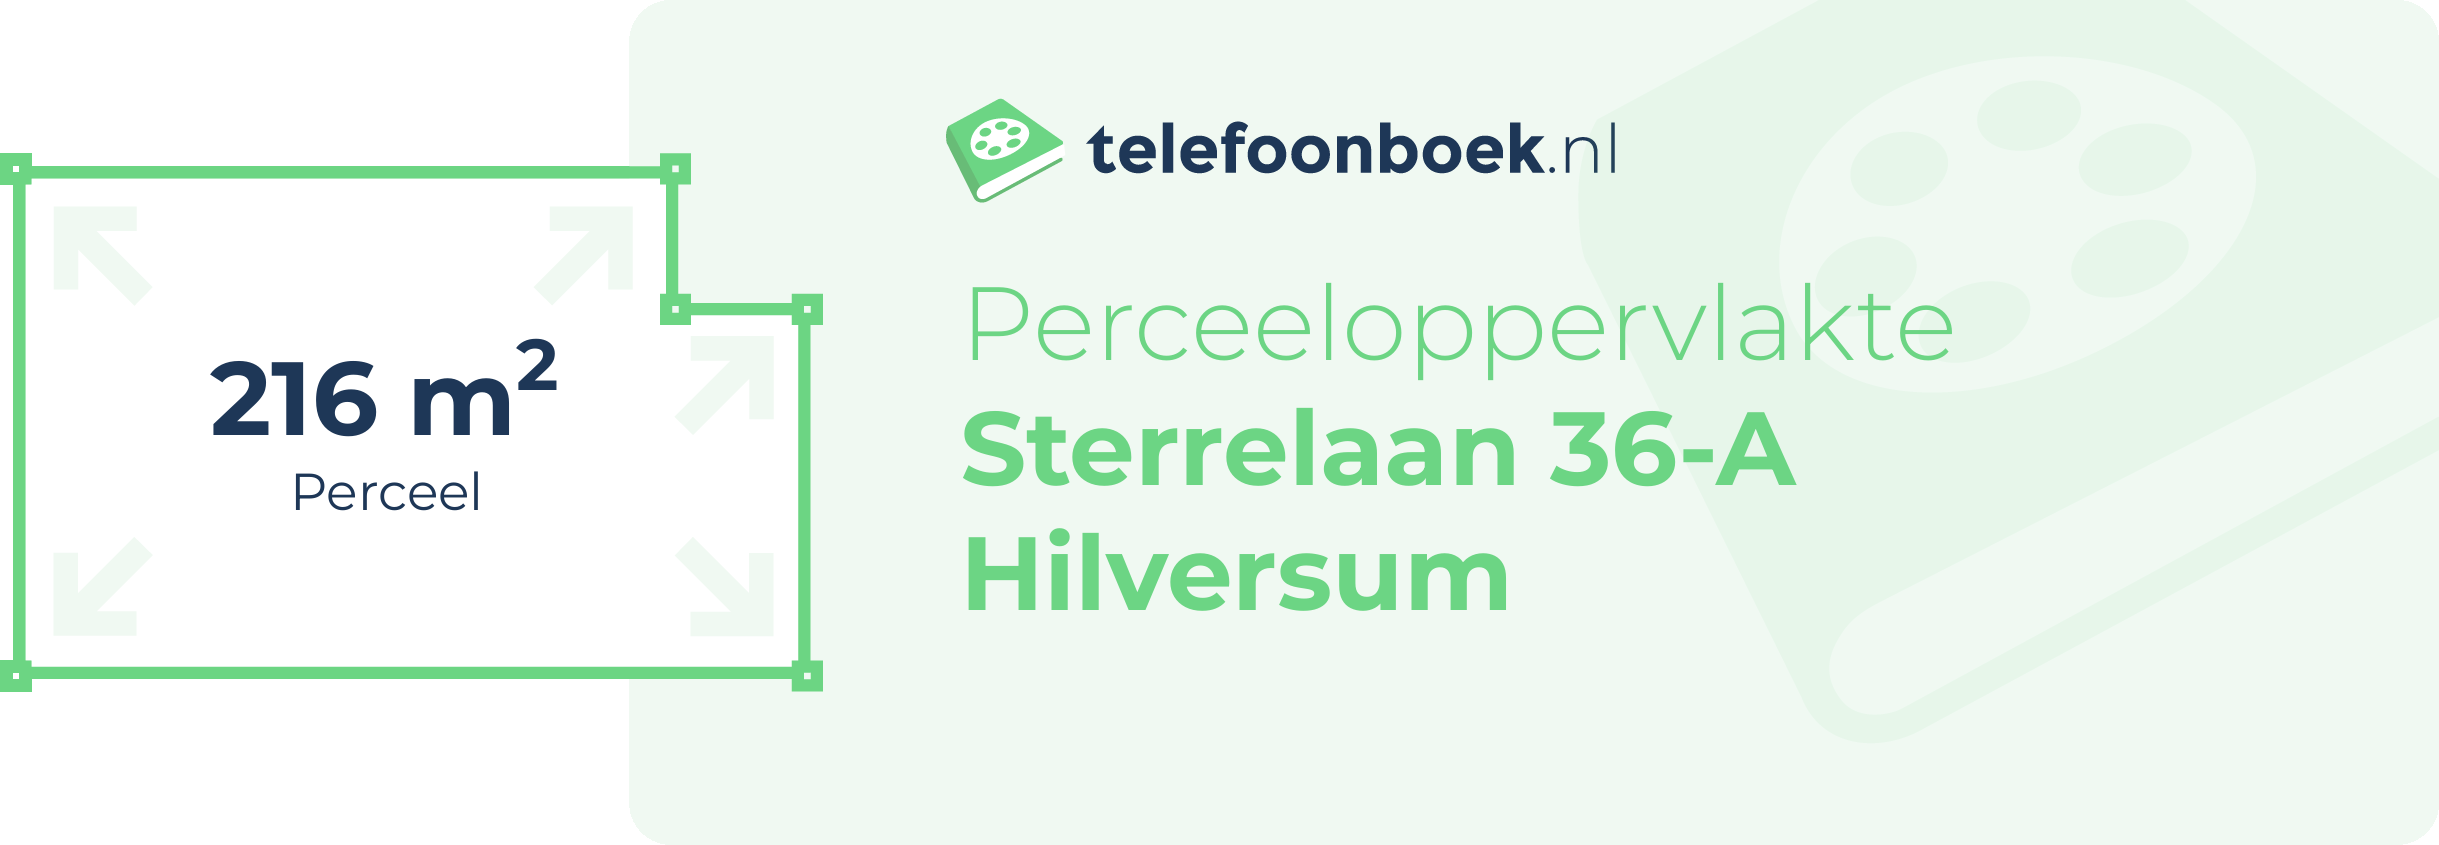 Perceeloppervlakte Sterrelaan 36-A Hilversum